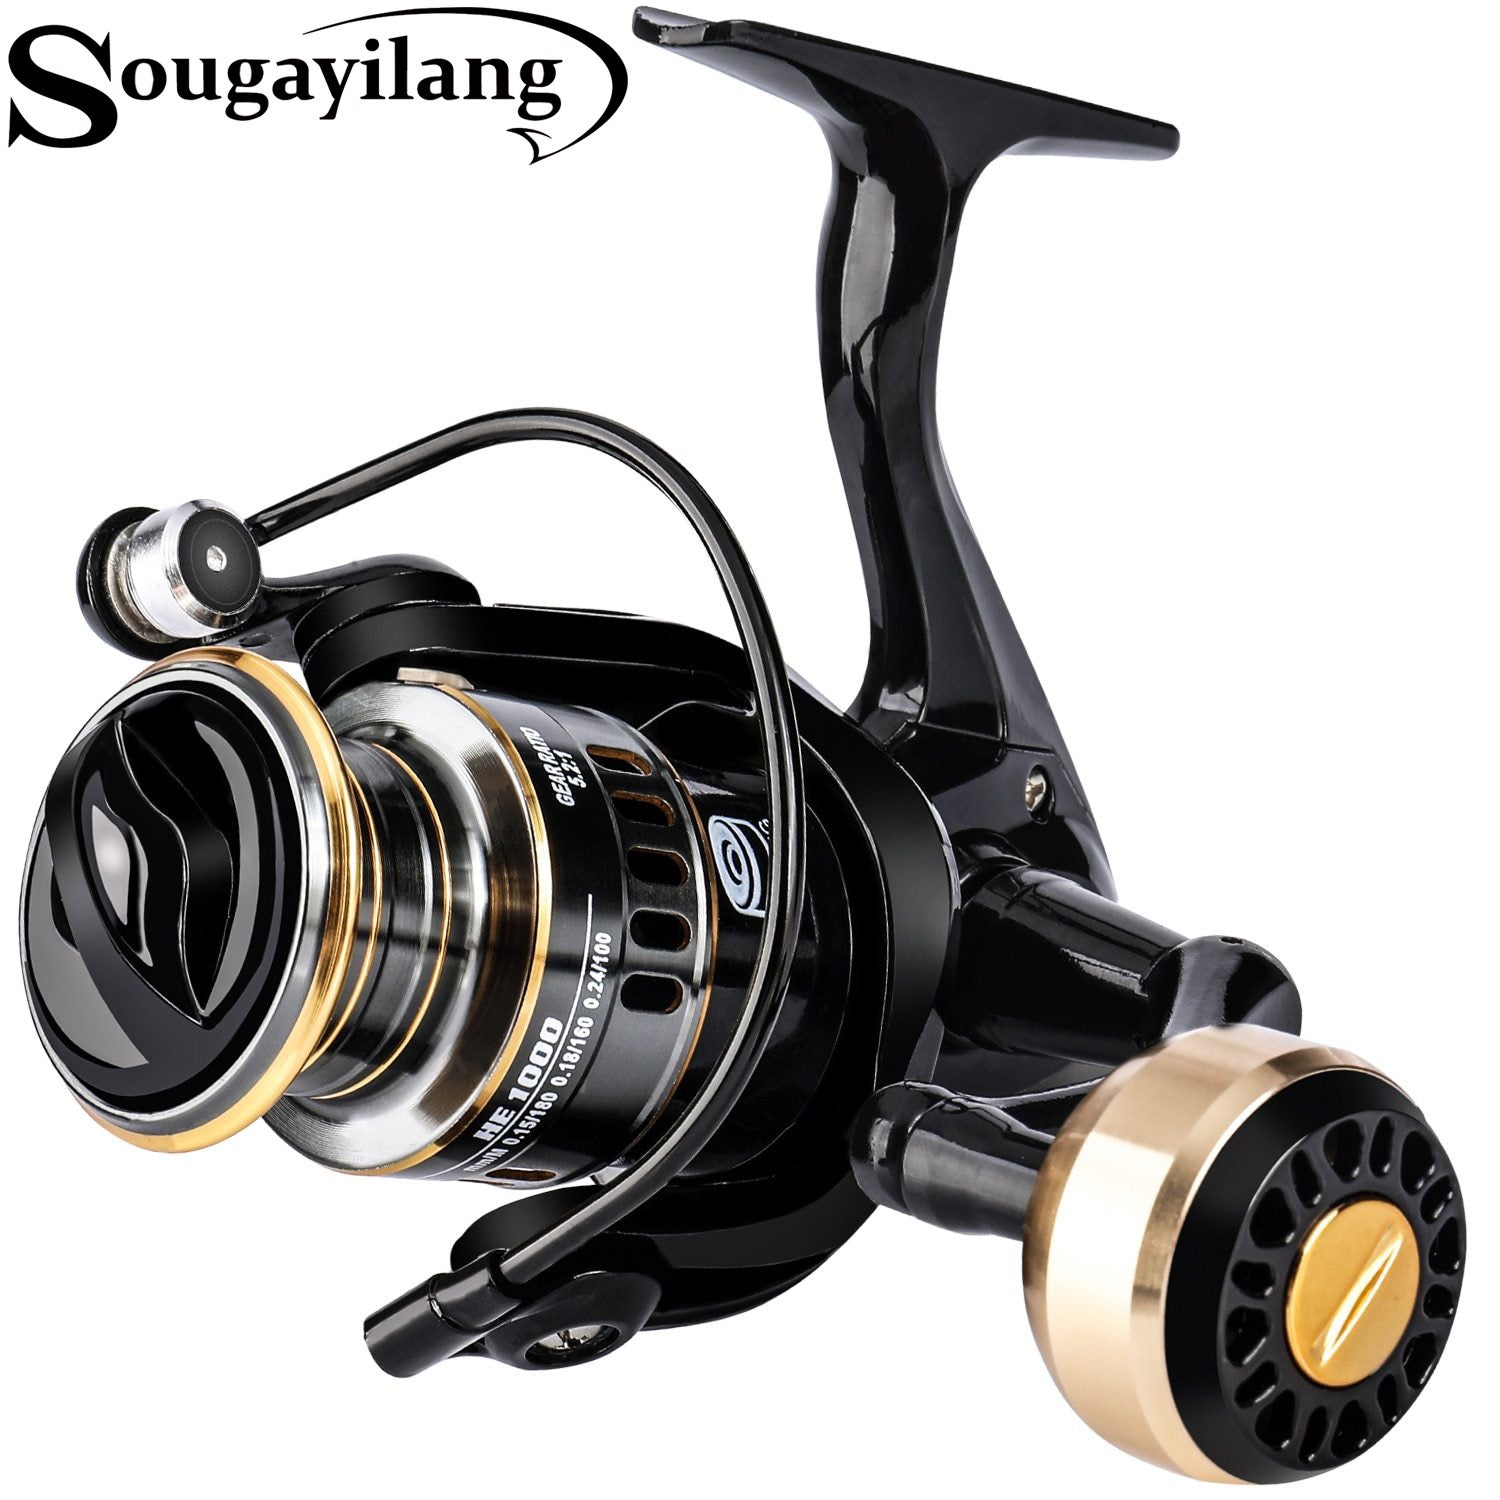 Sougayilang 13+1BB Carp Spinning Fishing Reel with Metal Reel Max